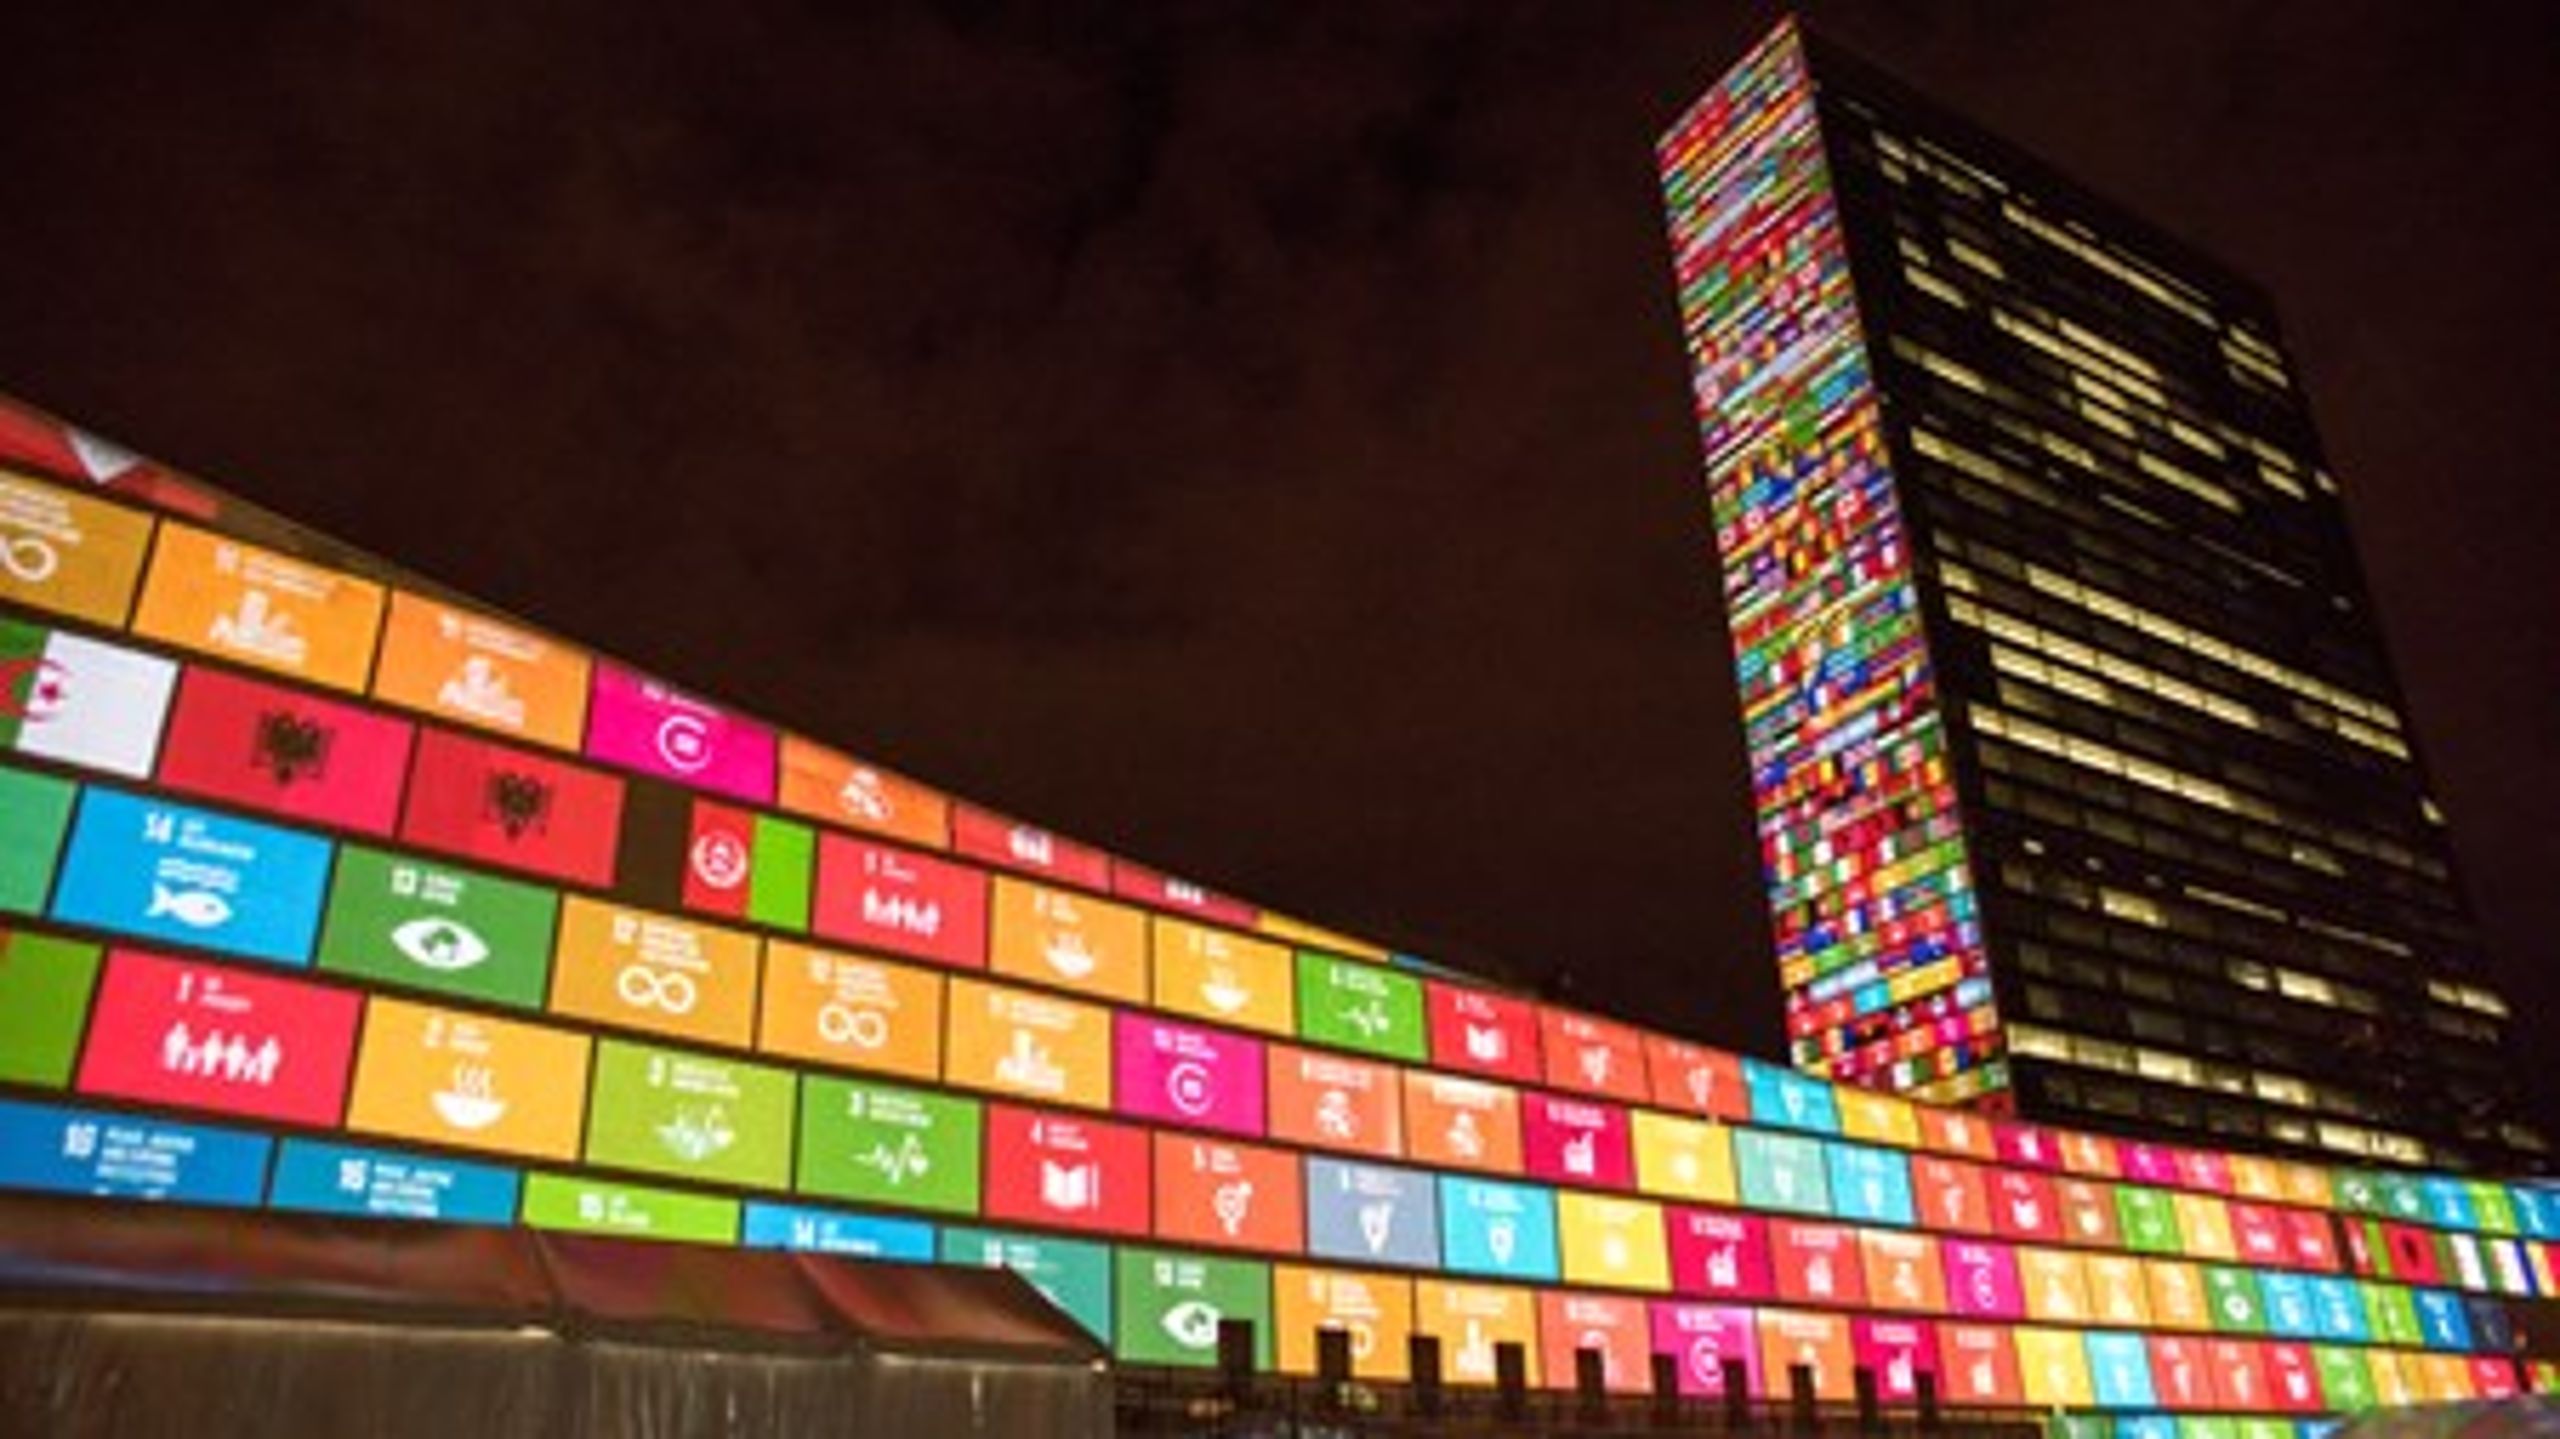 FN's hovedkvarter i New York oplyst i symboler og farver, der repræsenterer de 17 nye bæredygtighedsmål, efter de&nbsp;blev vedtaget fredag 25. september 2015.